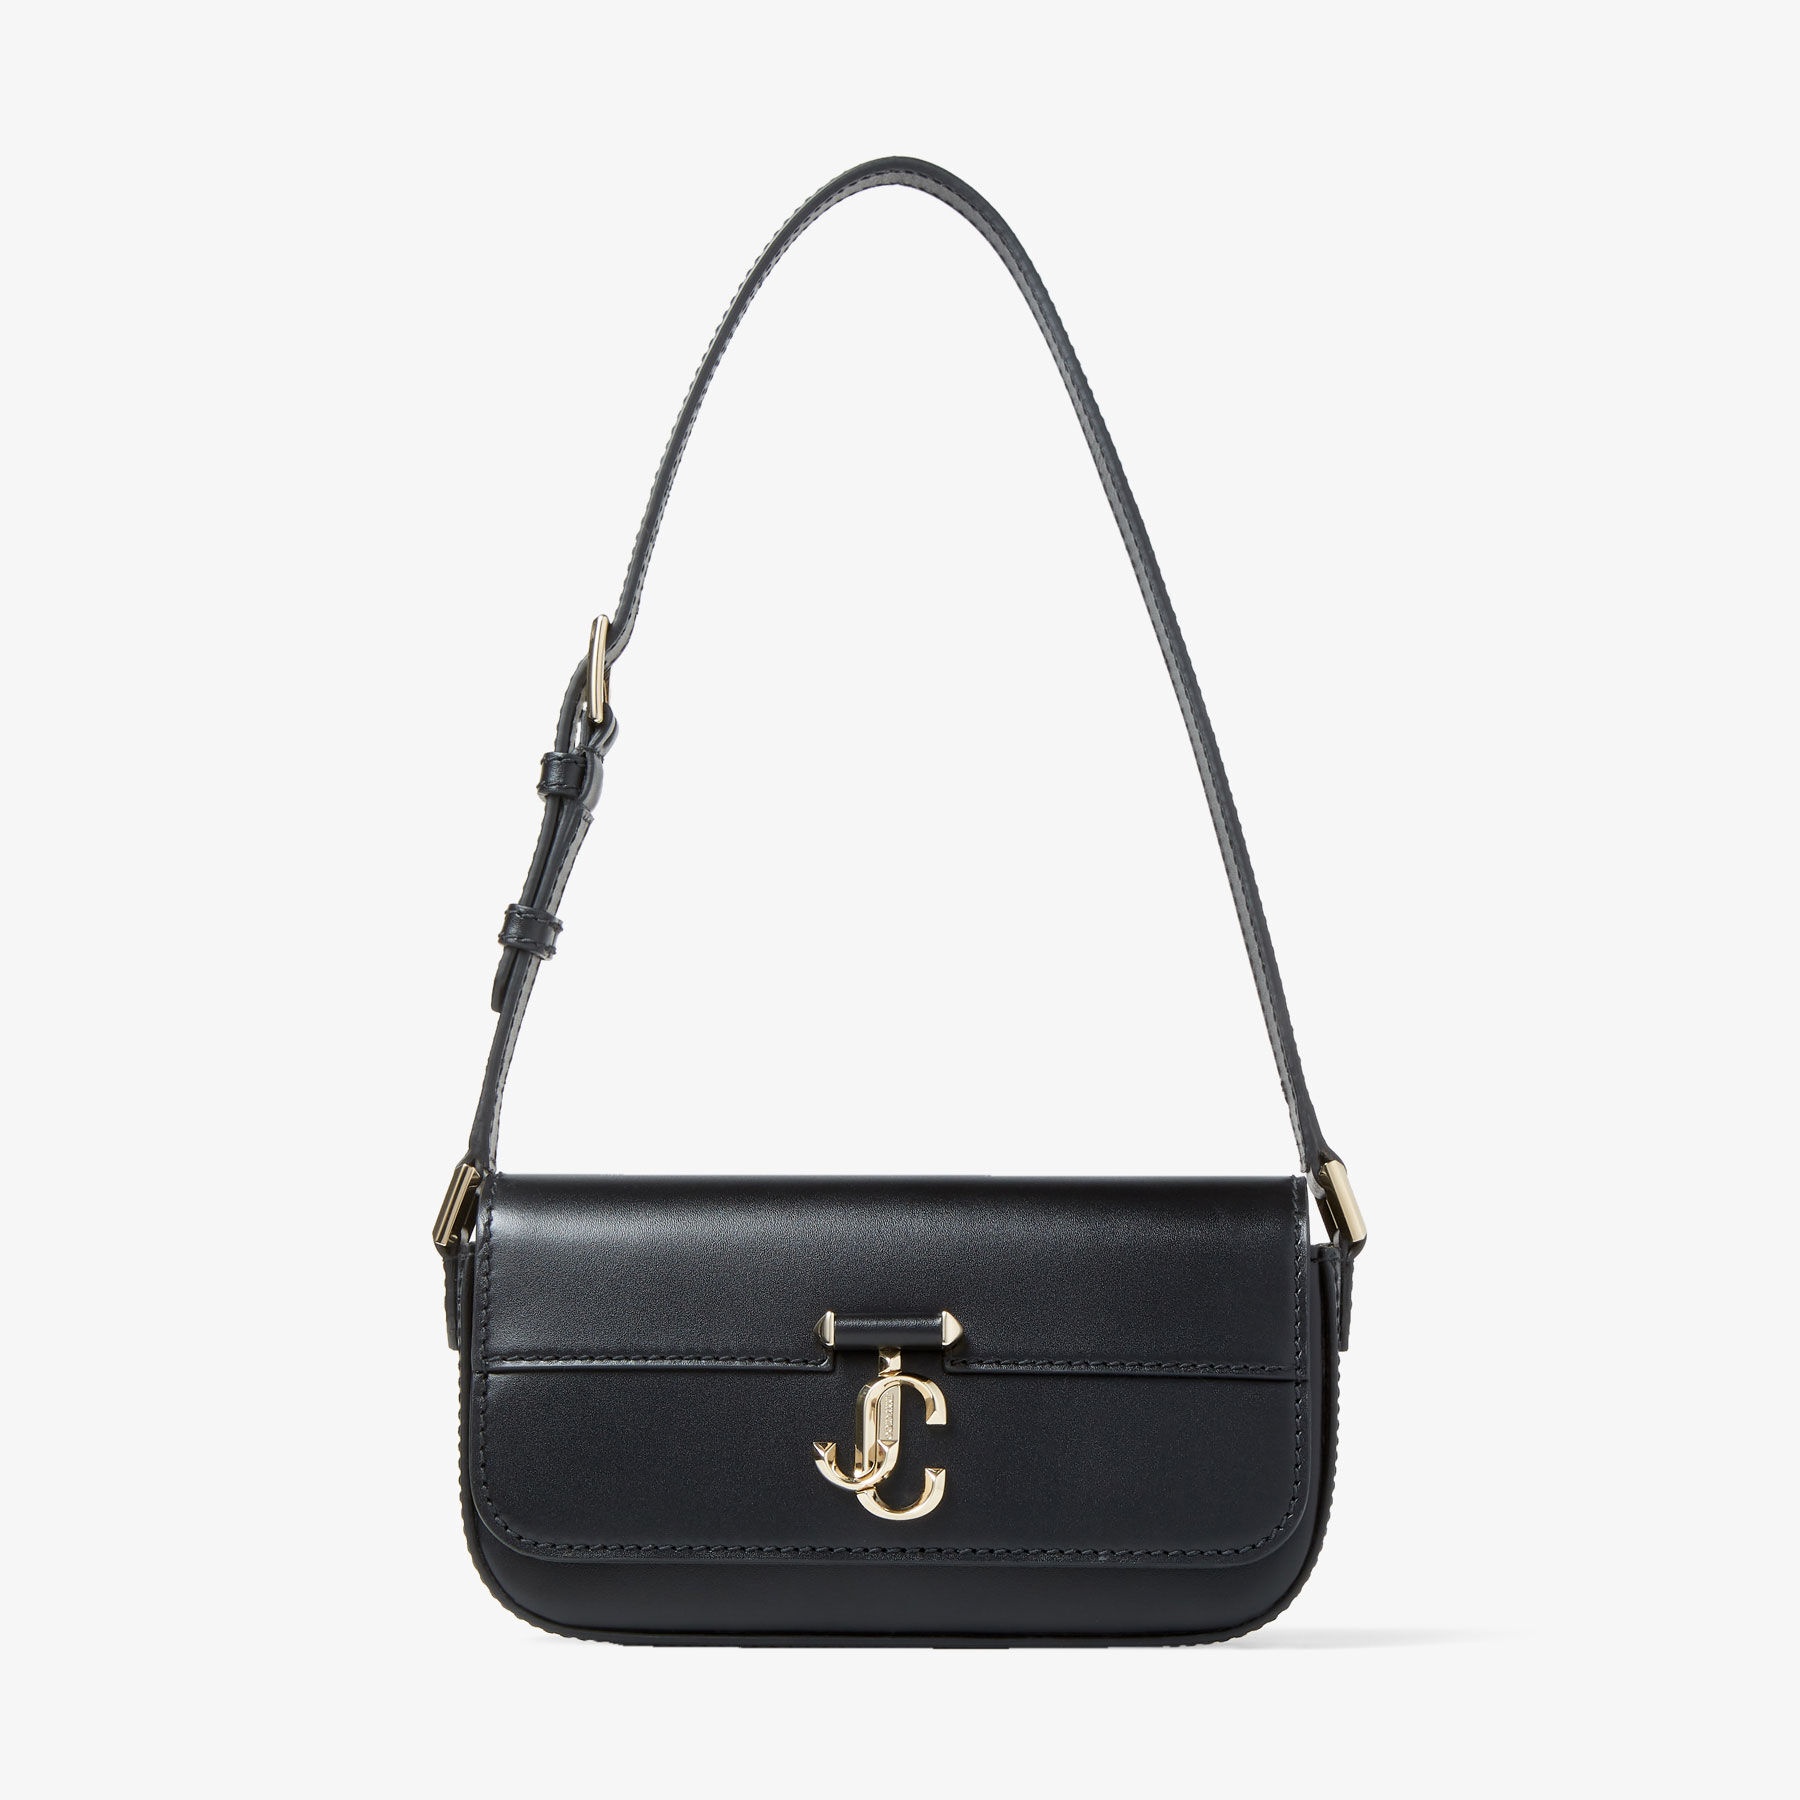 Varenne Mini Shoulder
Black Leather Mini Shoulder Bag with JC Emblem - 1